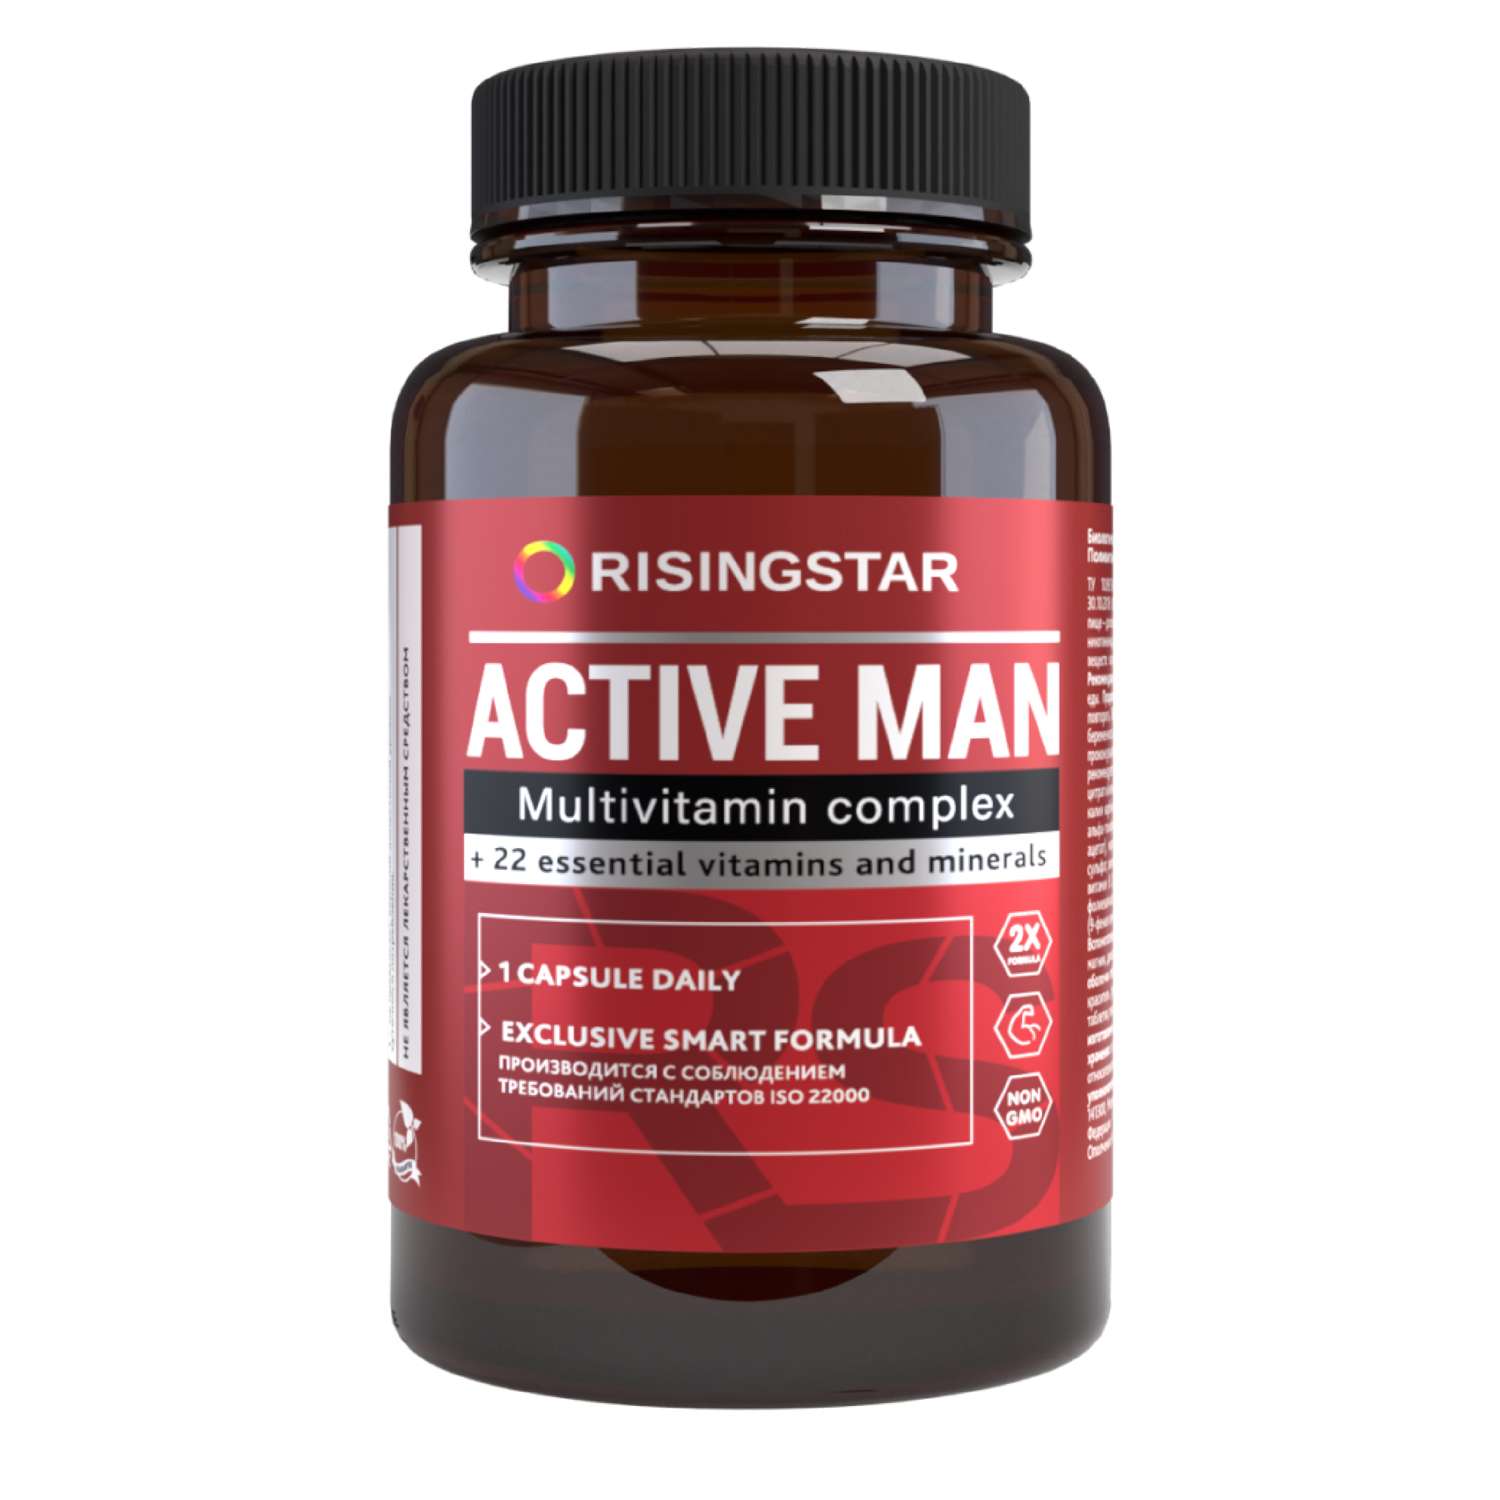 Биологически активная добавка Risingstar Мультивитаминый комплекс The Active Man 60таблеток - фото 1